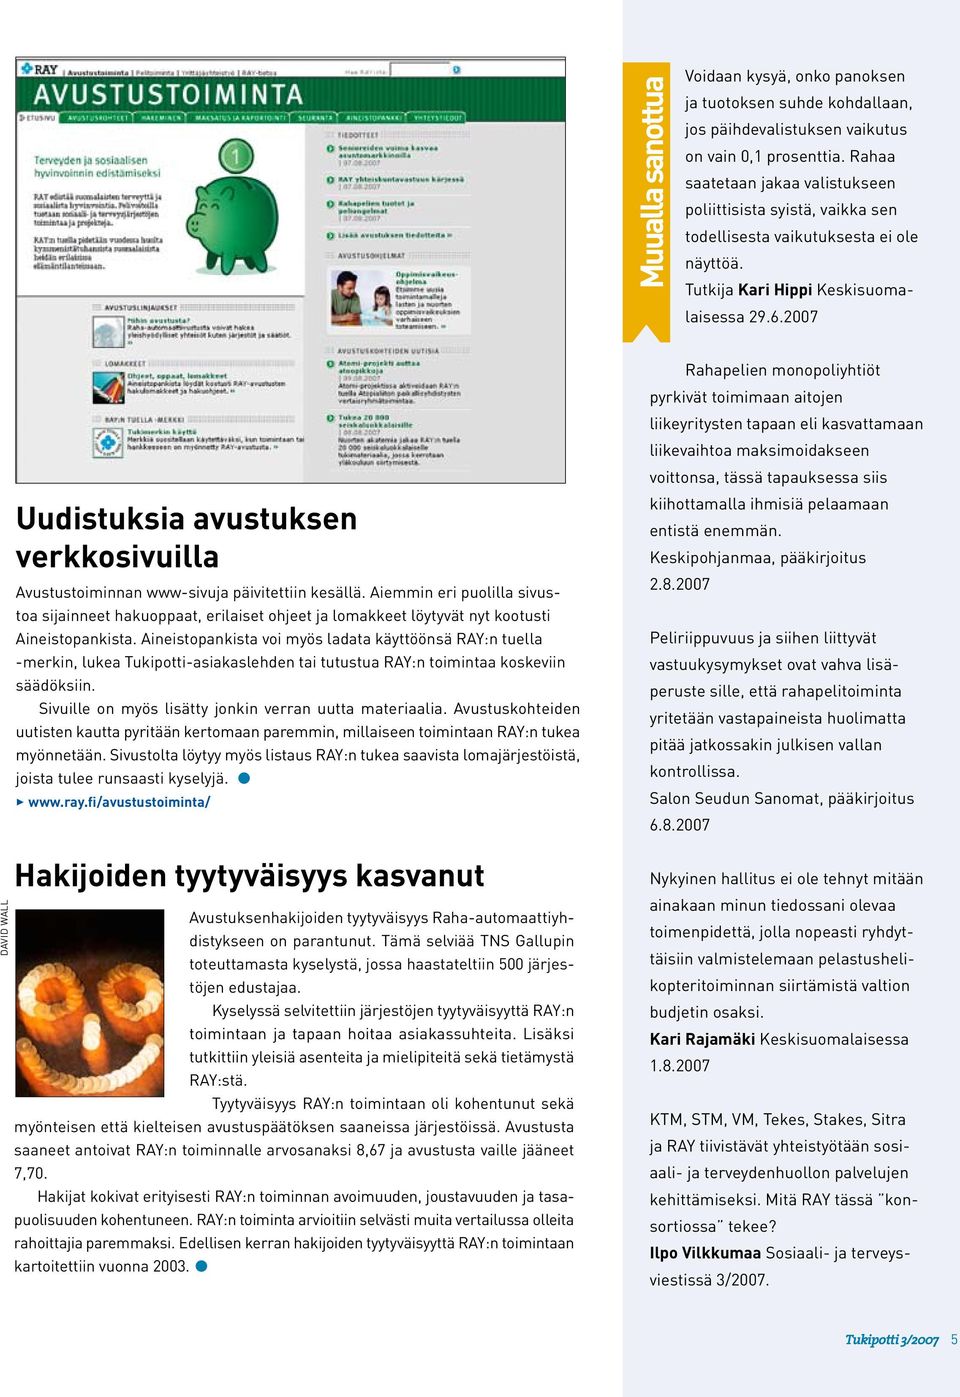 2007 DAVID WALL Uudistuksia avustuksen verkkosivuilla Avustustoiminnan www-sivuja päivitettiin kesällä.